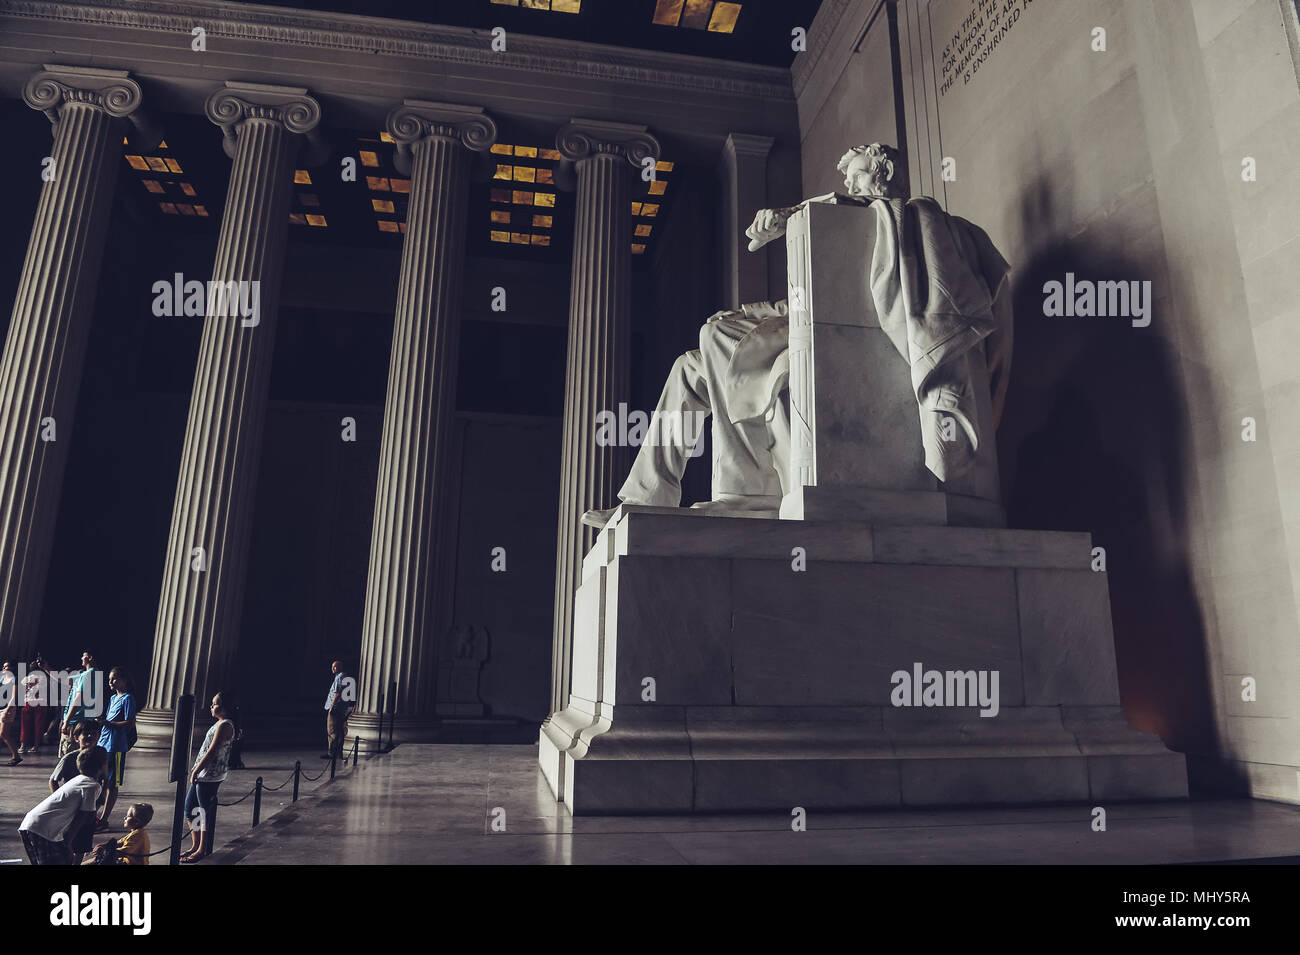 Washington D.C./ EE.UU. - 07.19.2013: Los turistas que visitan el Monumento a Lincoln, mirando la estatua de Abraham Lincoln. Foto de stock